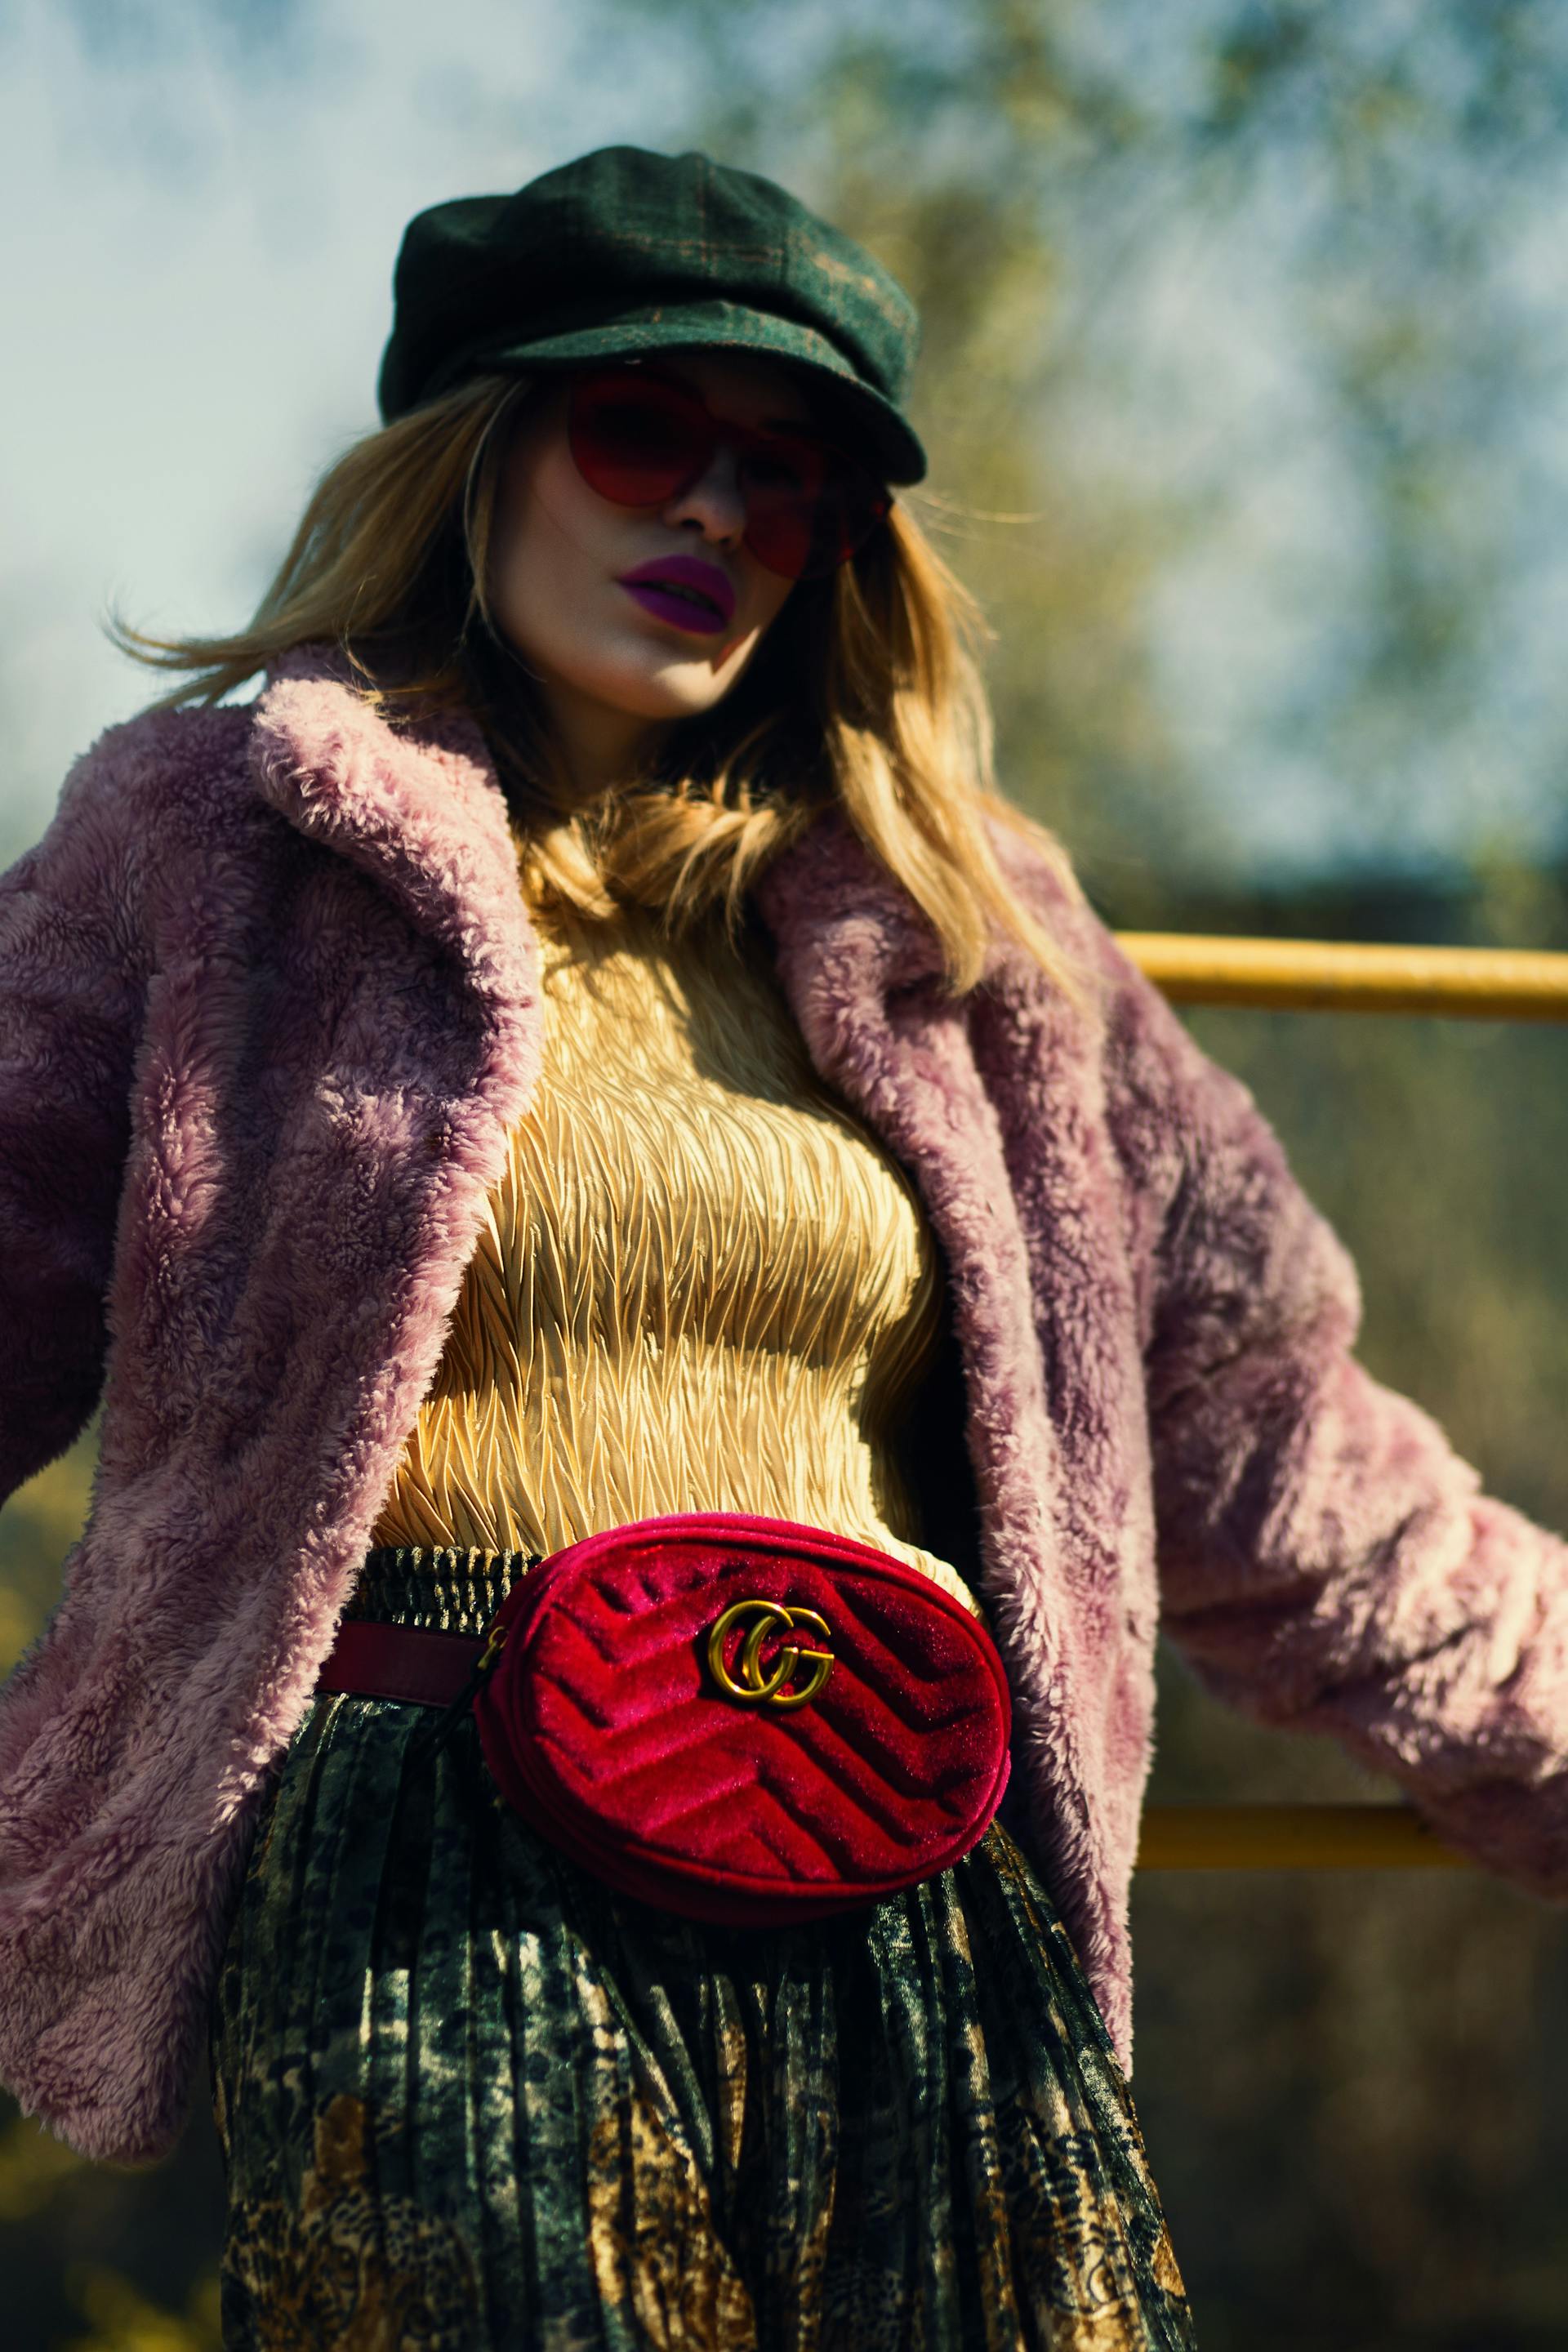 Femme avec un sac Gucci rouge | Source : Pexels